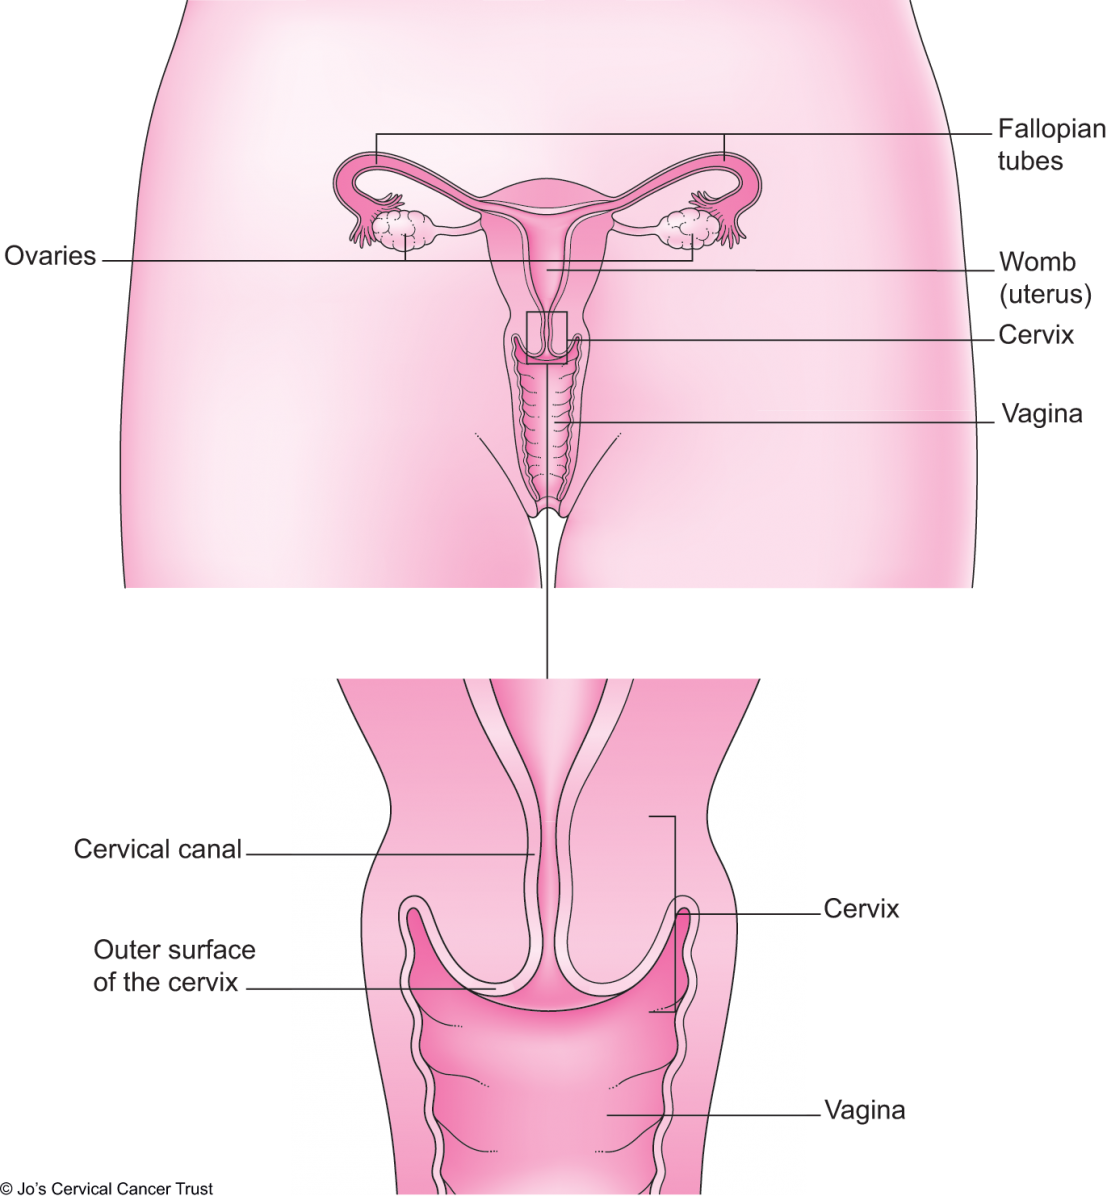 szyjka macicy pokazująca zewnętrzną powierzchnię i kanał szyjki macicy